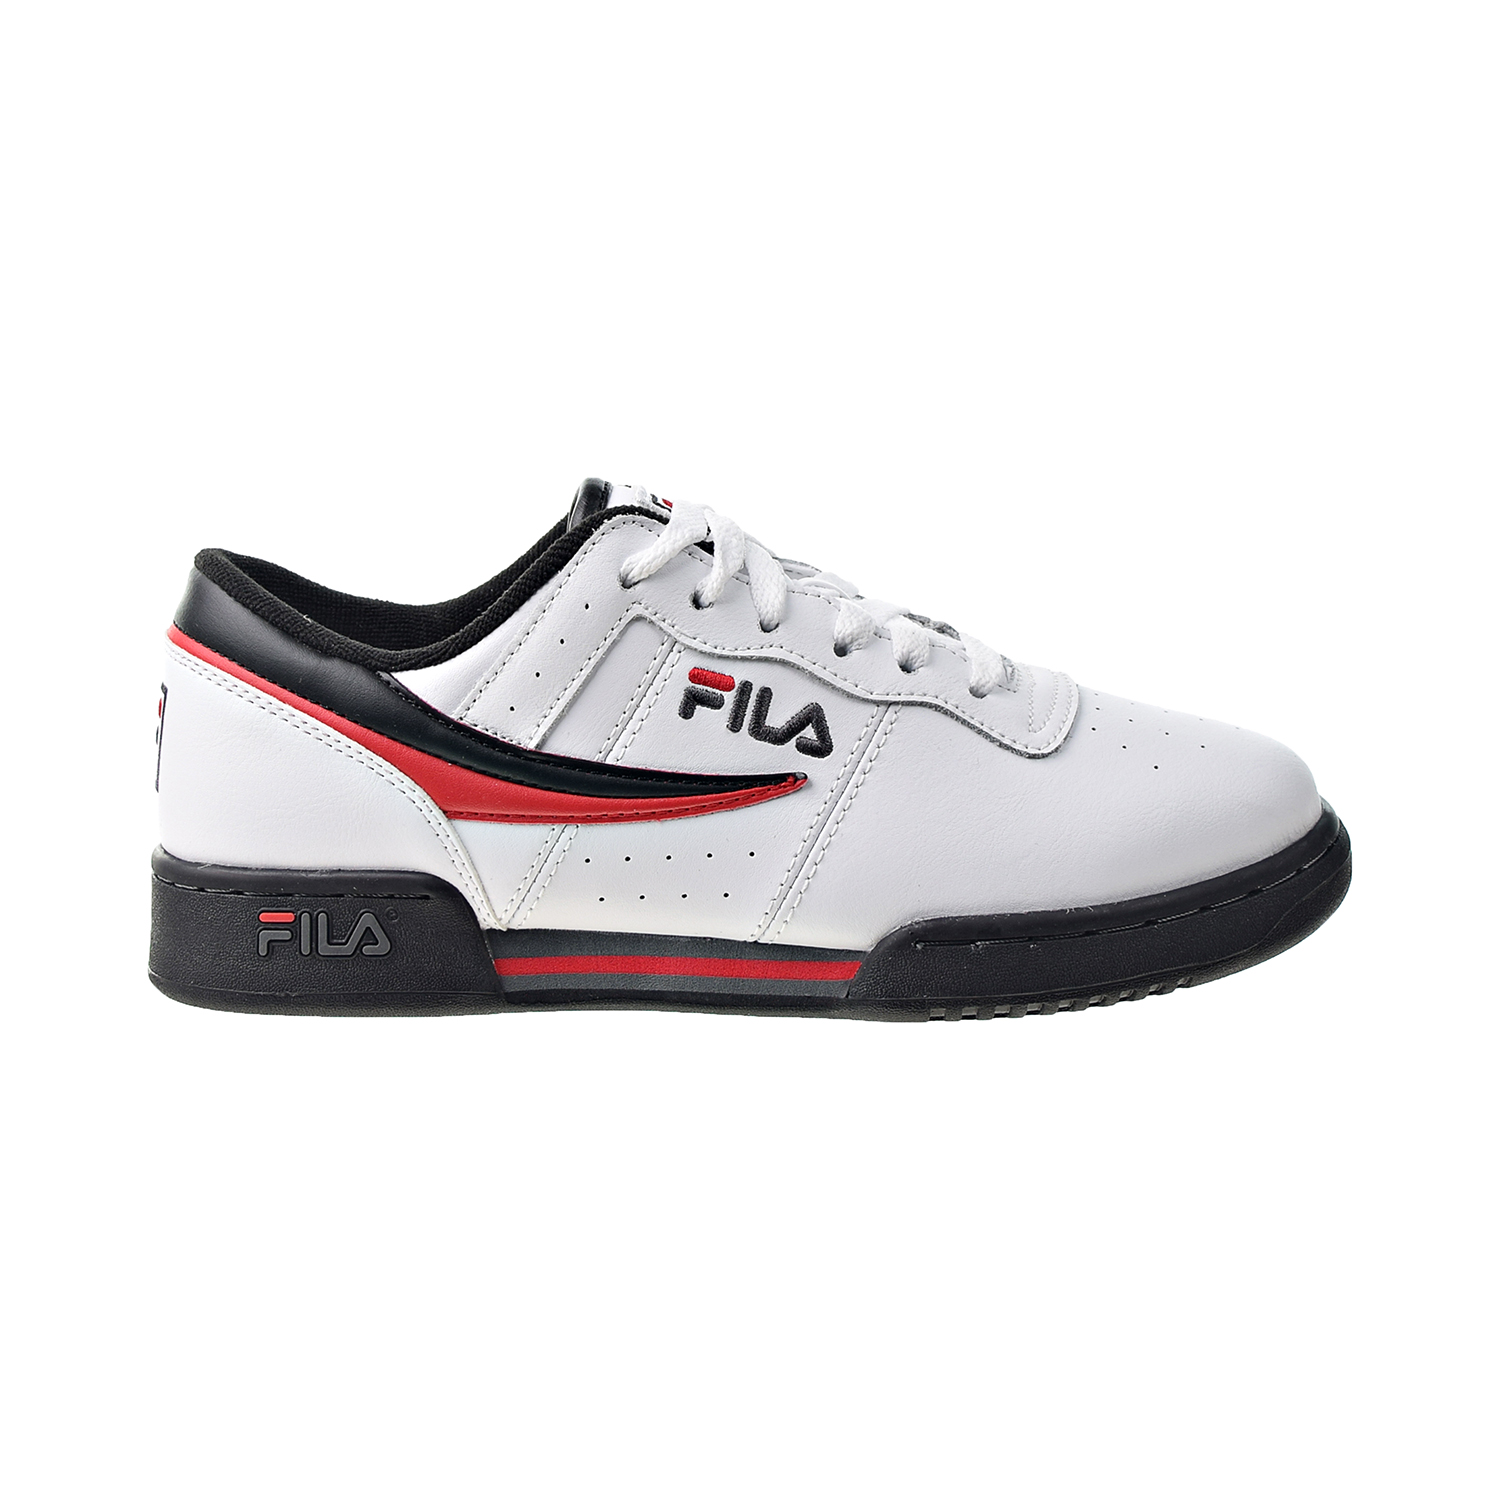 Fila Original Fitness Men's Shoes White-Black-Red 11F16LT-122 | eBay